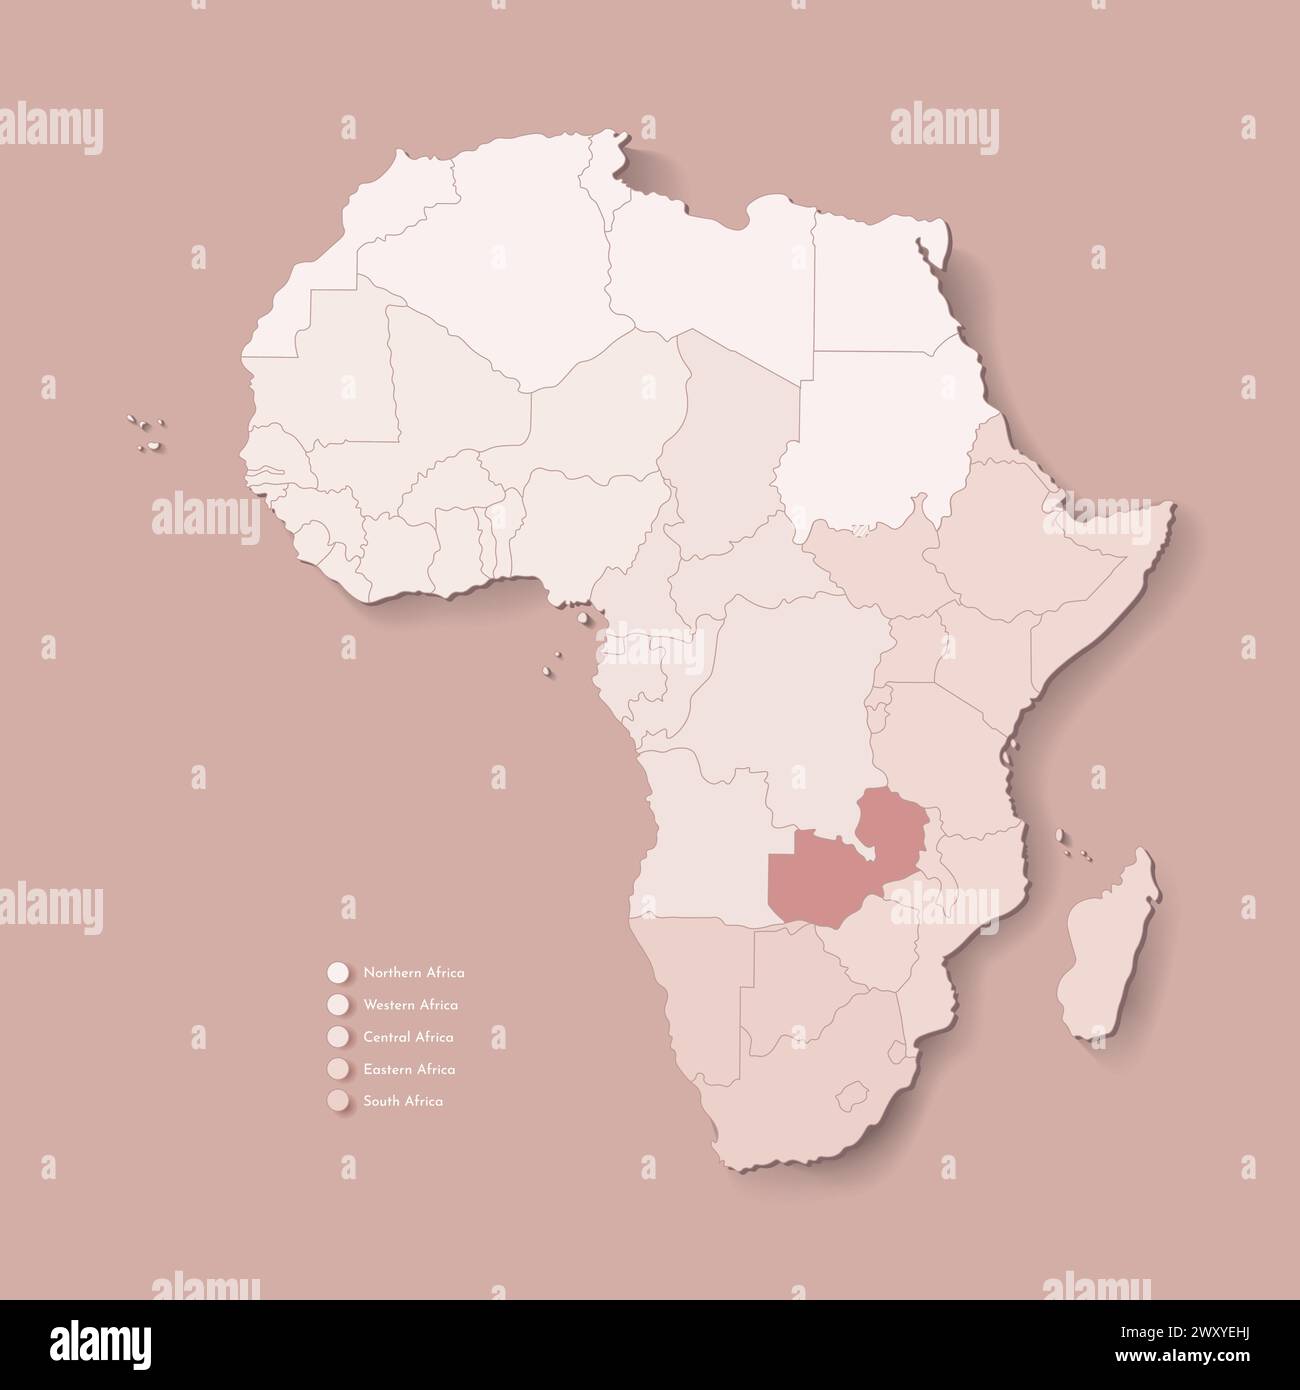 Illustrazione vettoriale con continente africano con confini di tutti gli stati e paese marcato Zambia. Mappa politica di colore marrone con occidentale, sud e. Illustrazione Vettoriale